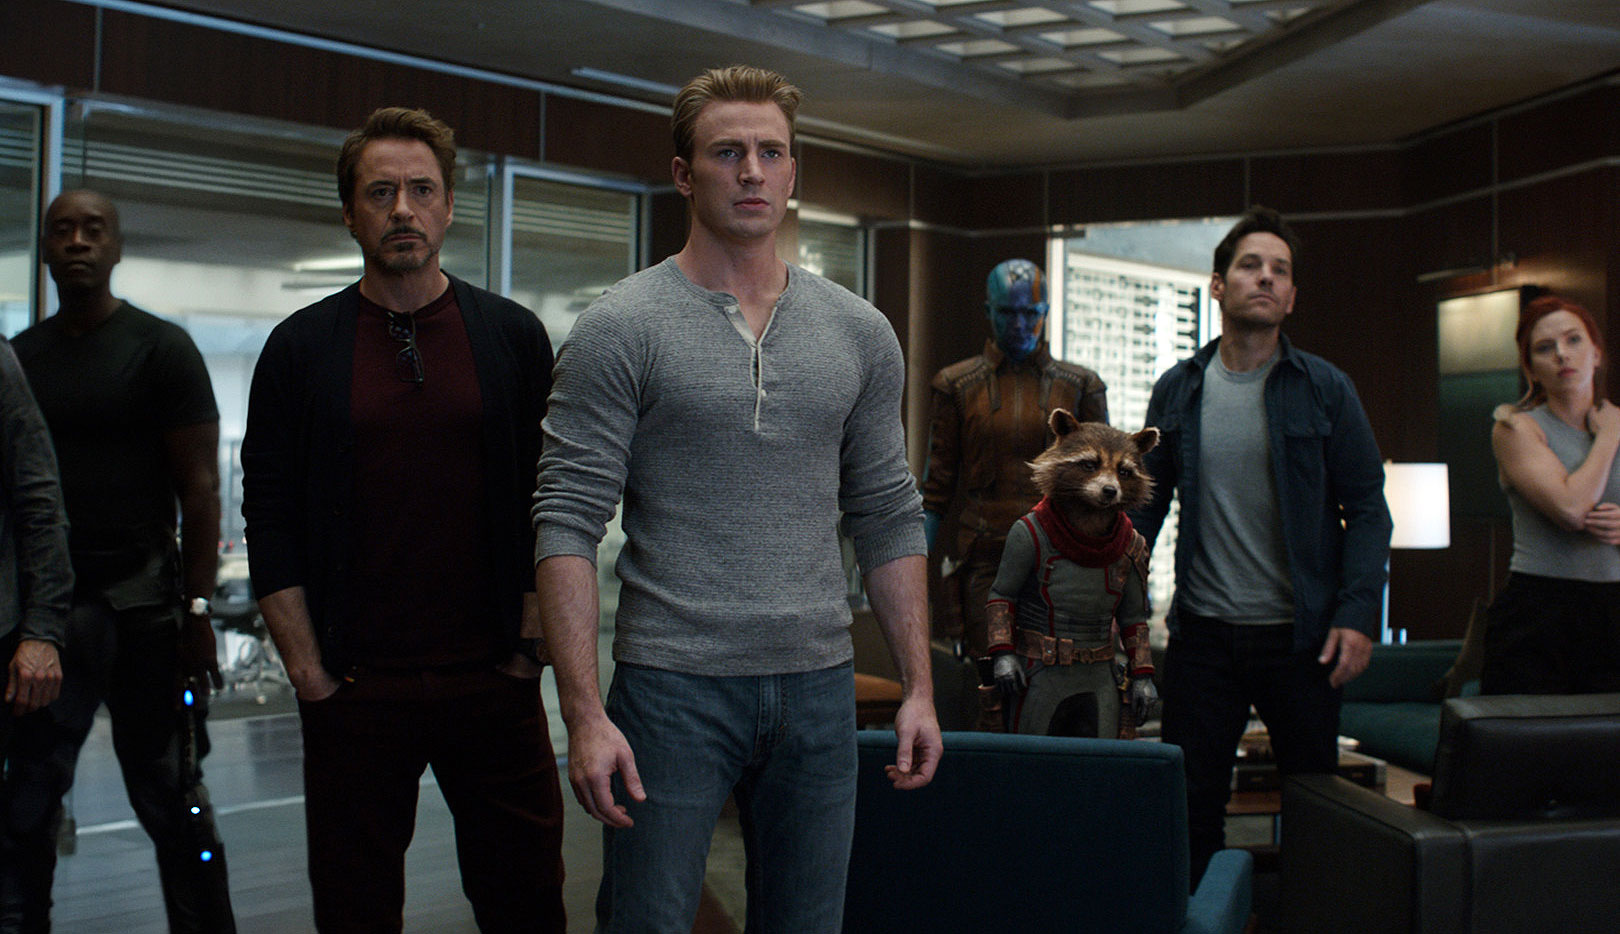 Robert Downey Jr., Chris Evans and Scarlett Johansson in "Avengers: Endgame"